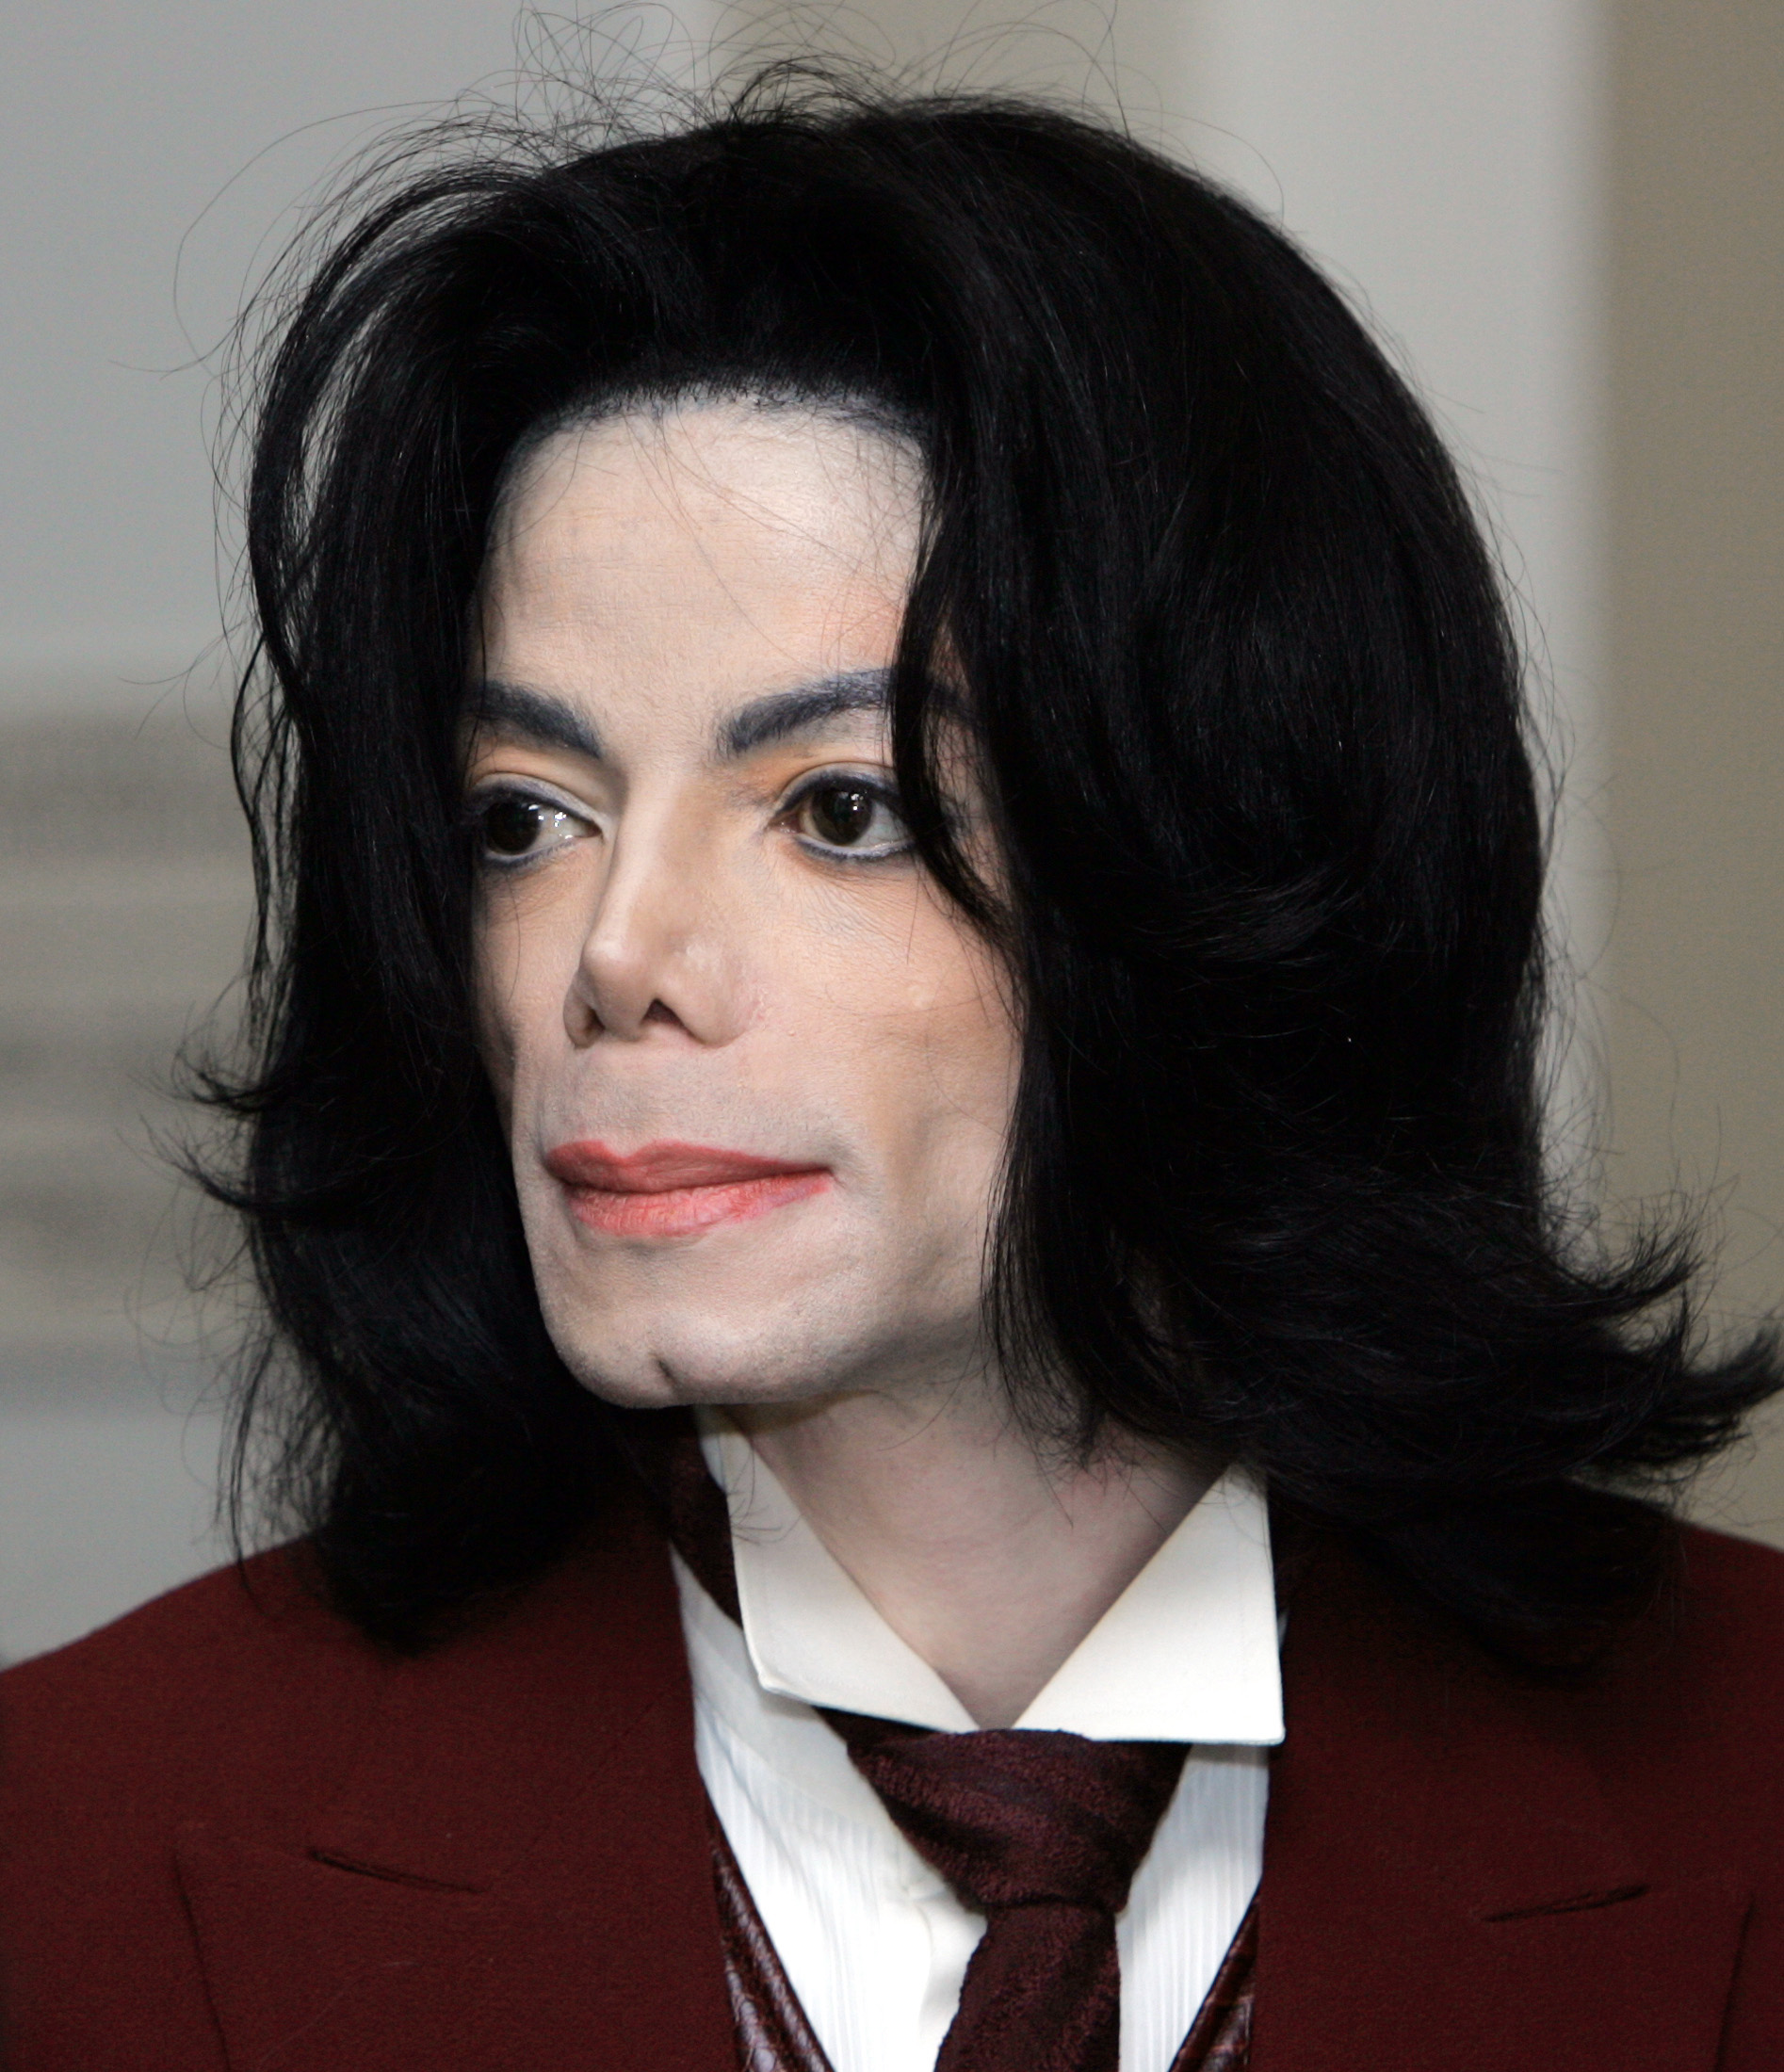 Michael Jackson en 2005 | Source : Getty Images